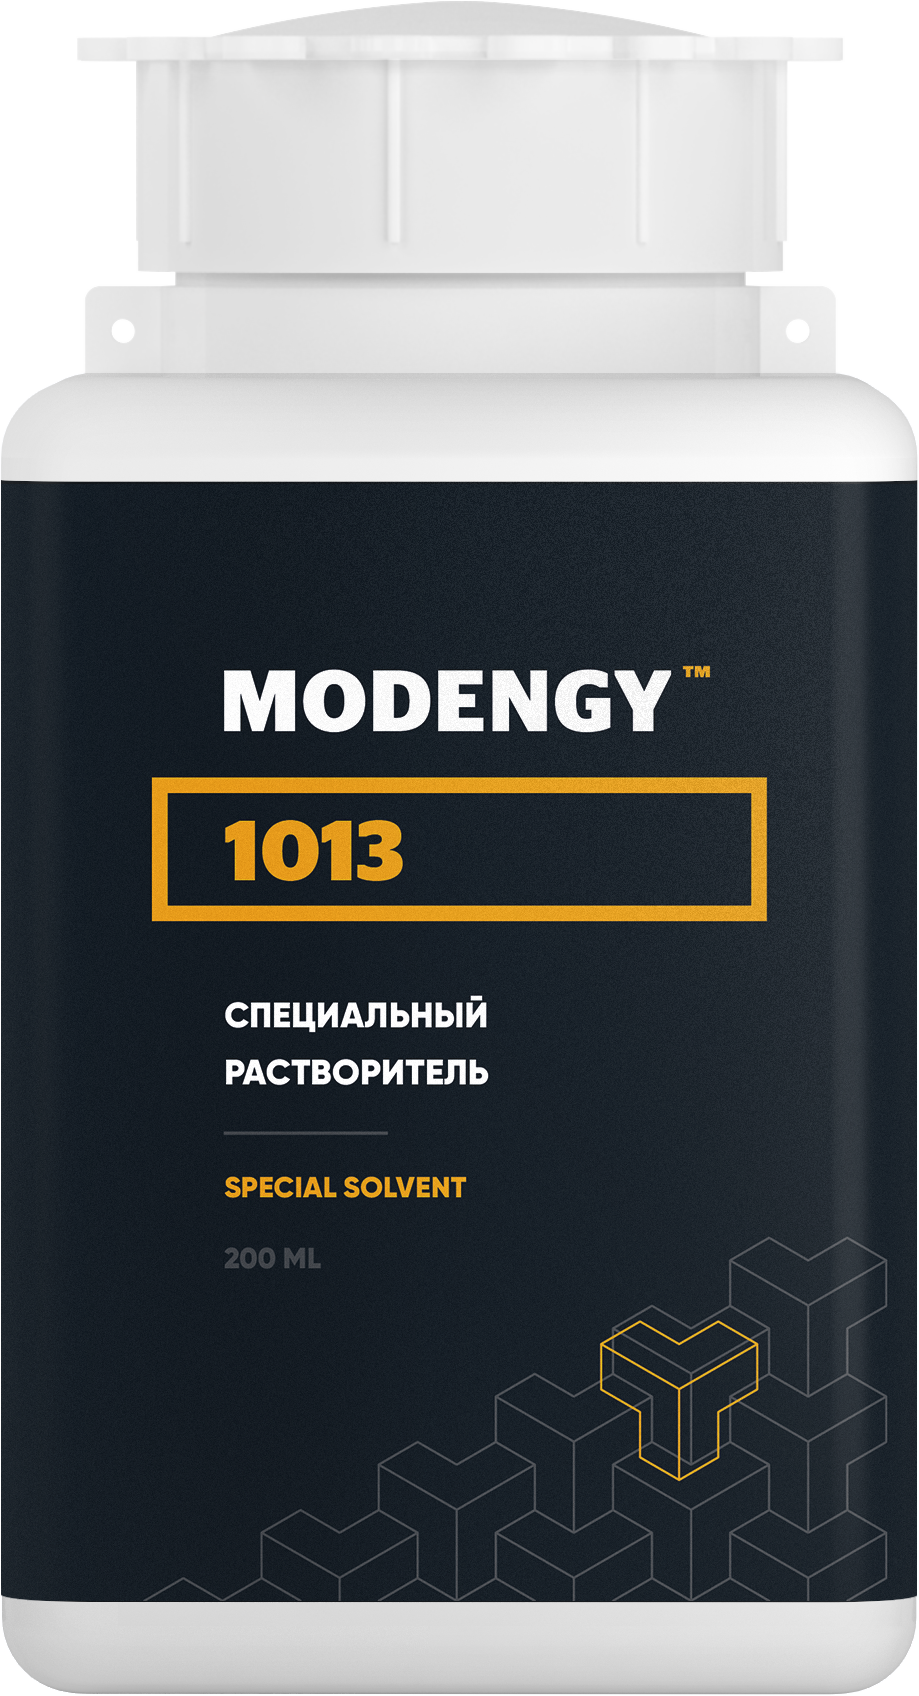 Специальный растворитель MODENGY 1013 (200 мл) специальный растворитель modengy 1013 4 5 л